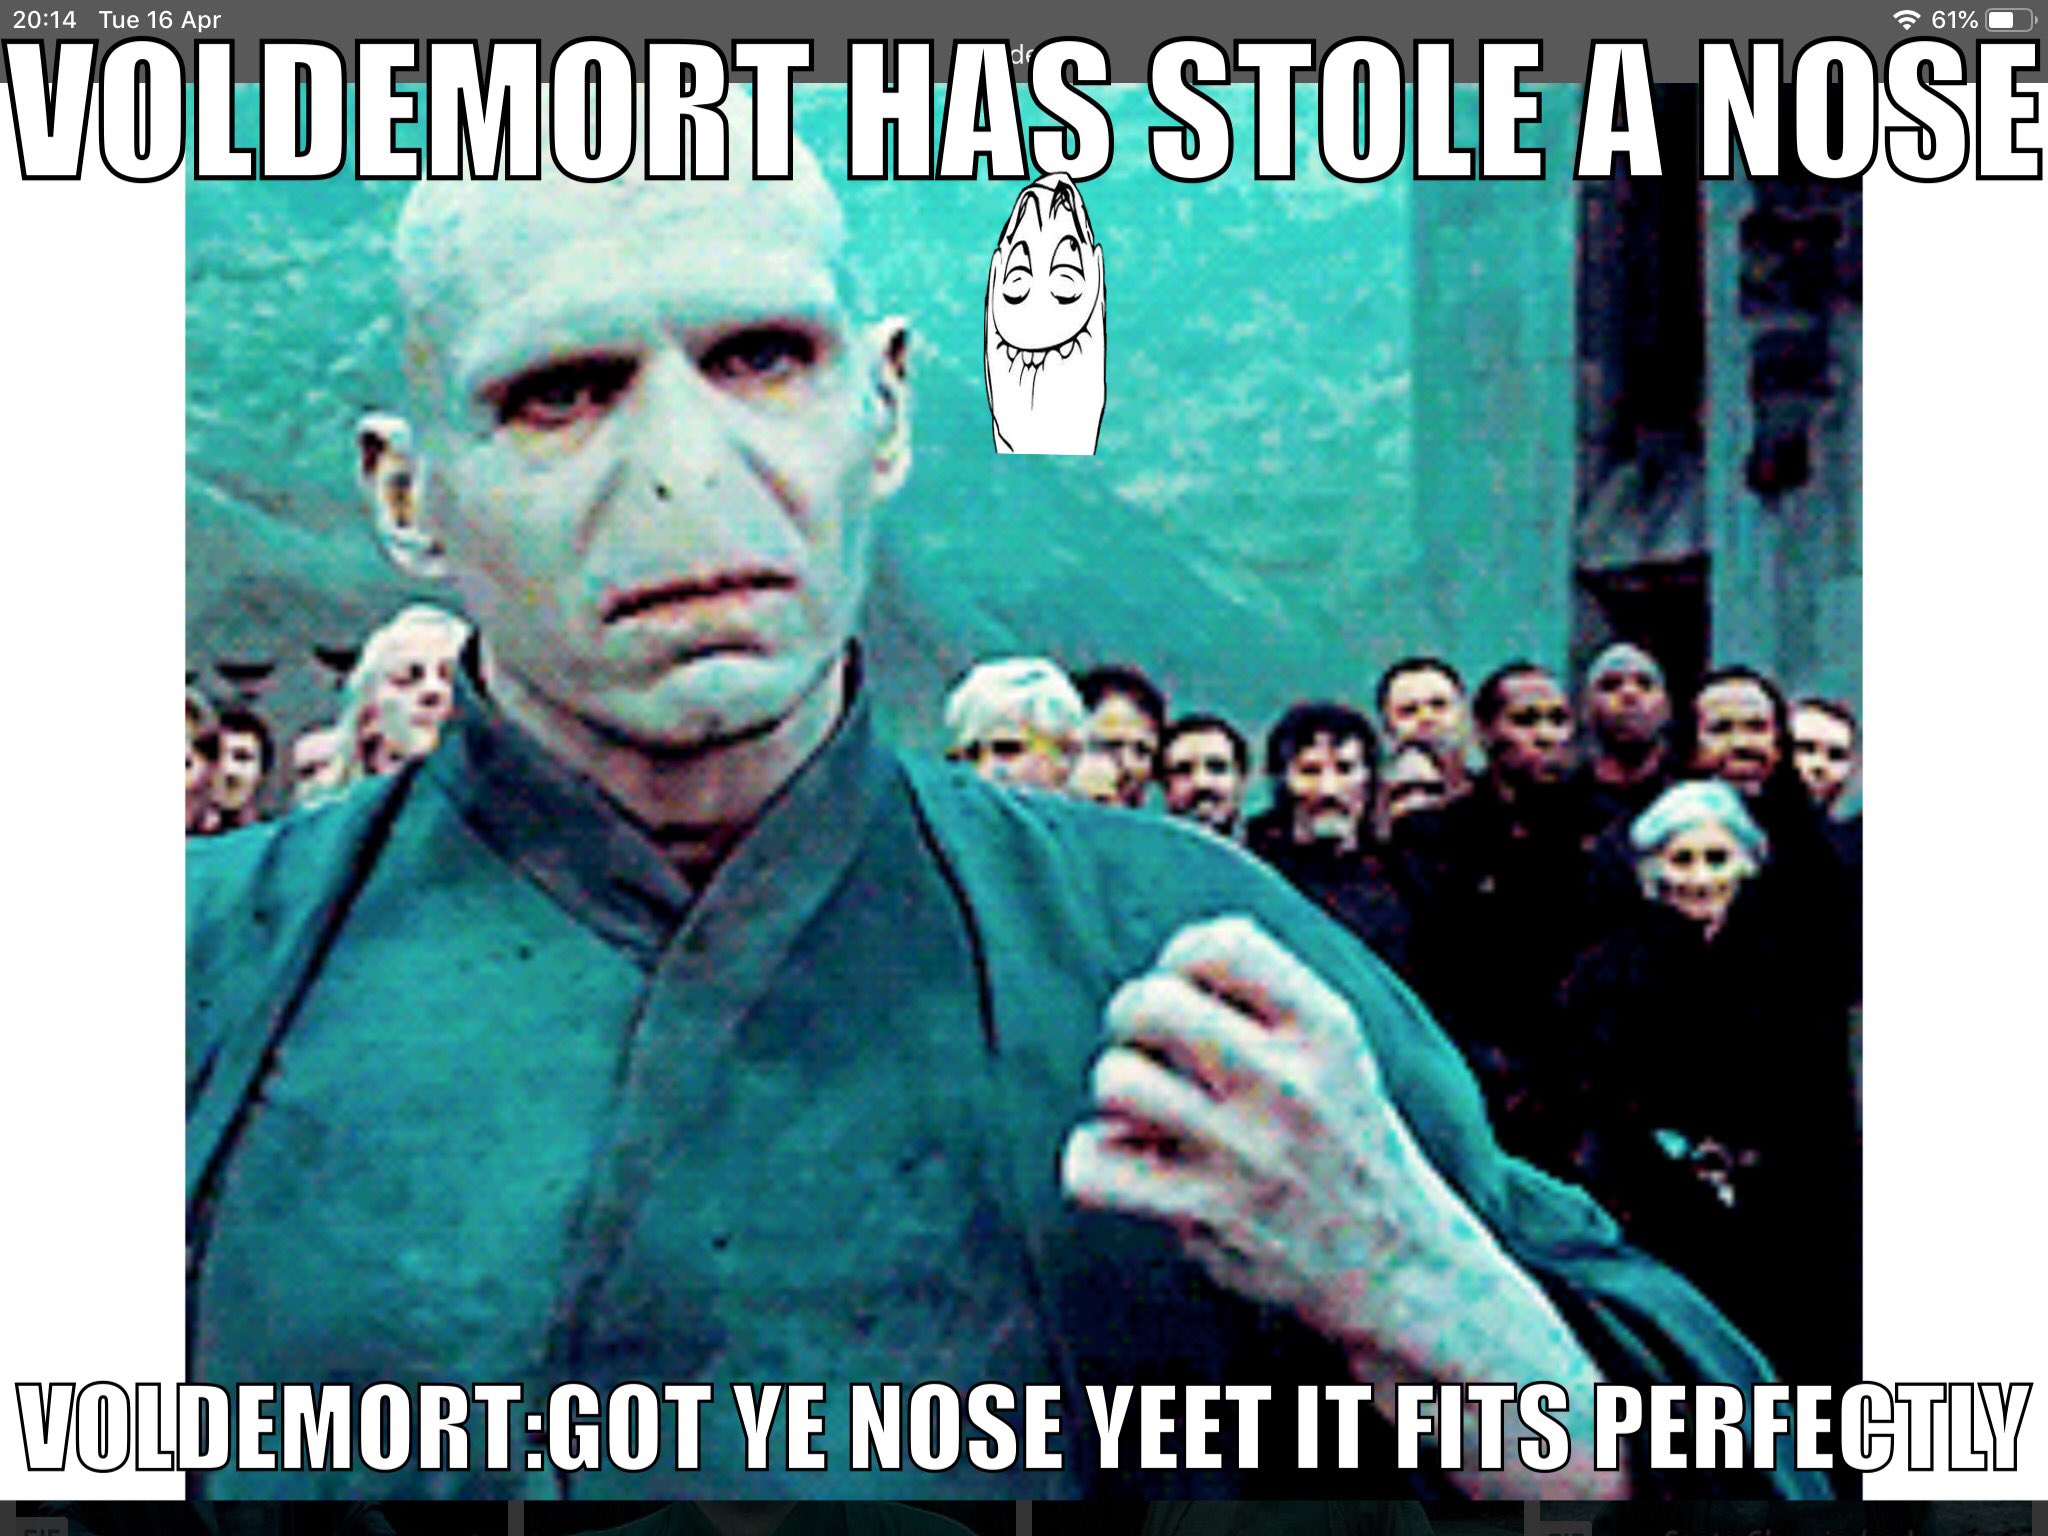 Voldemort nose memes!